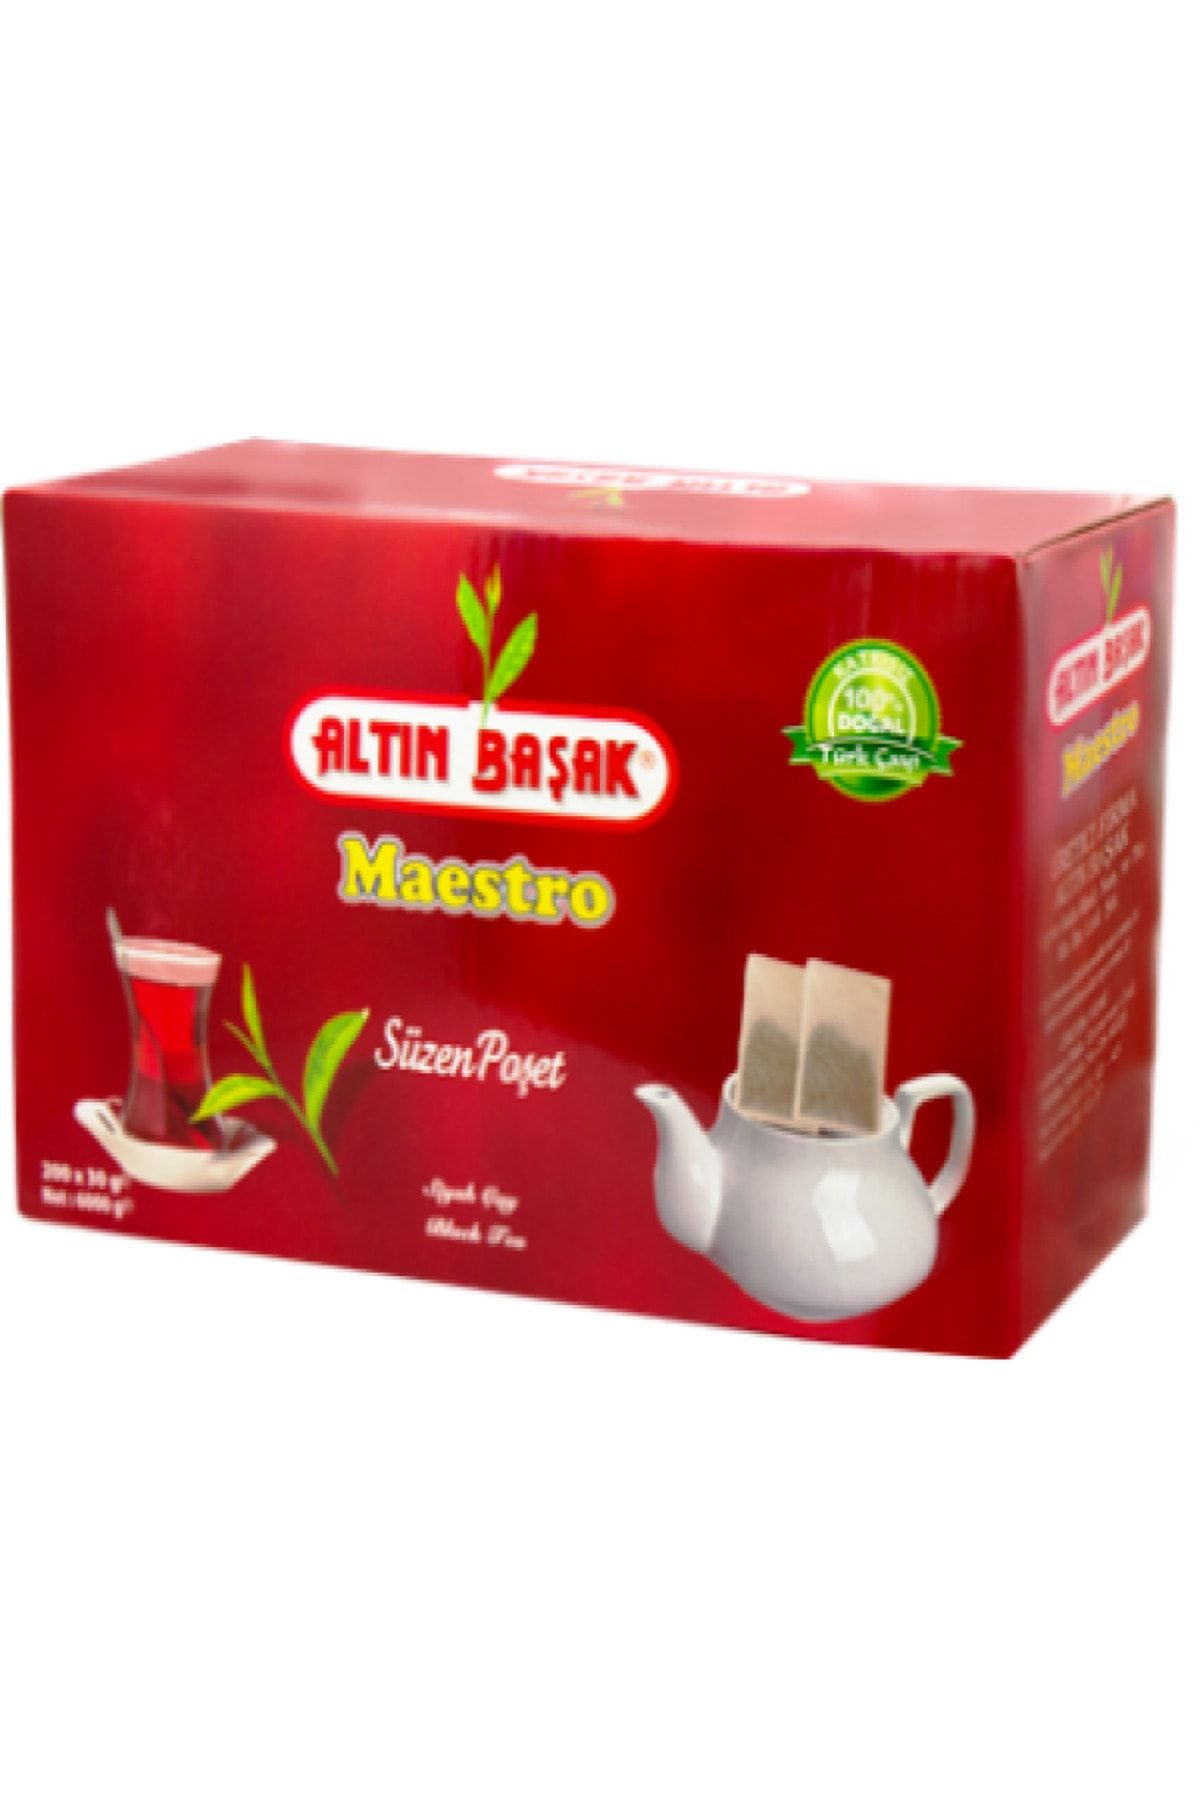 ALTINBAŞAK ÇAY Altınbaşak maestro demlik poşet çay 30gr /200 adet / 6kg